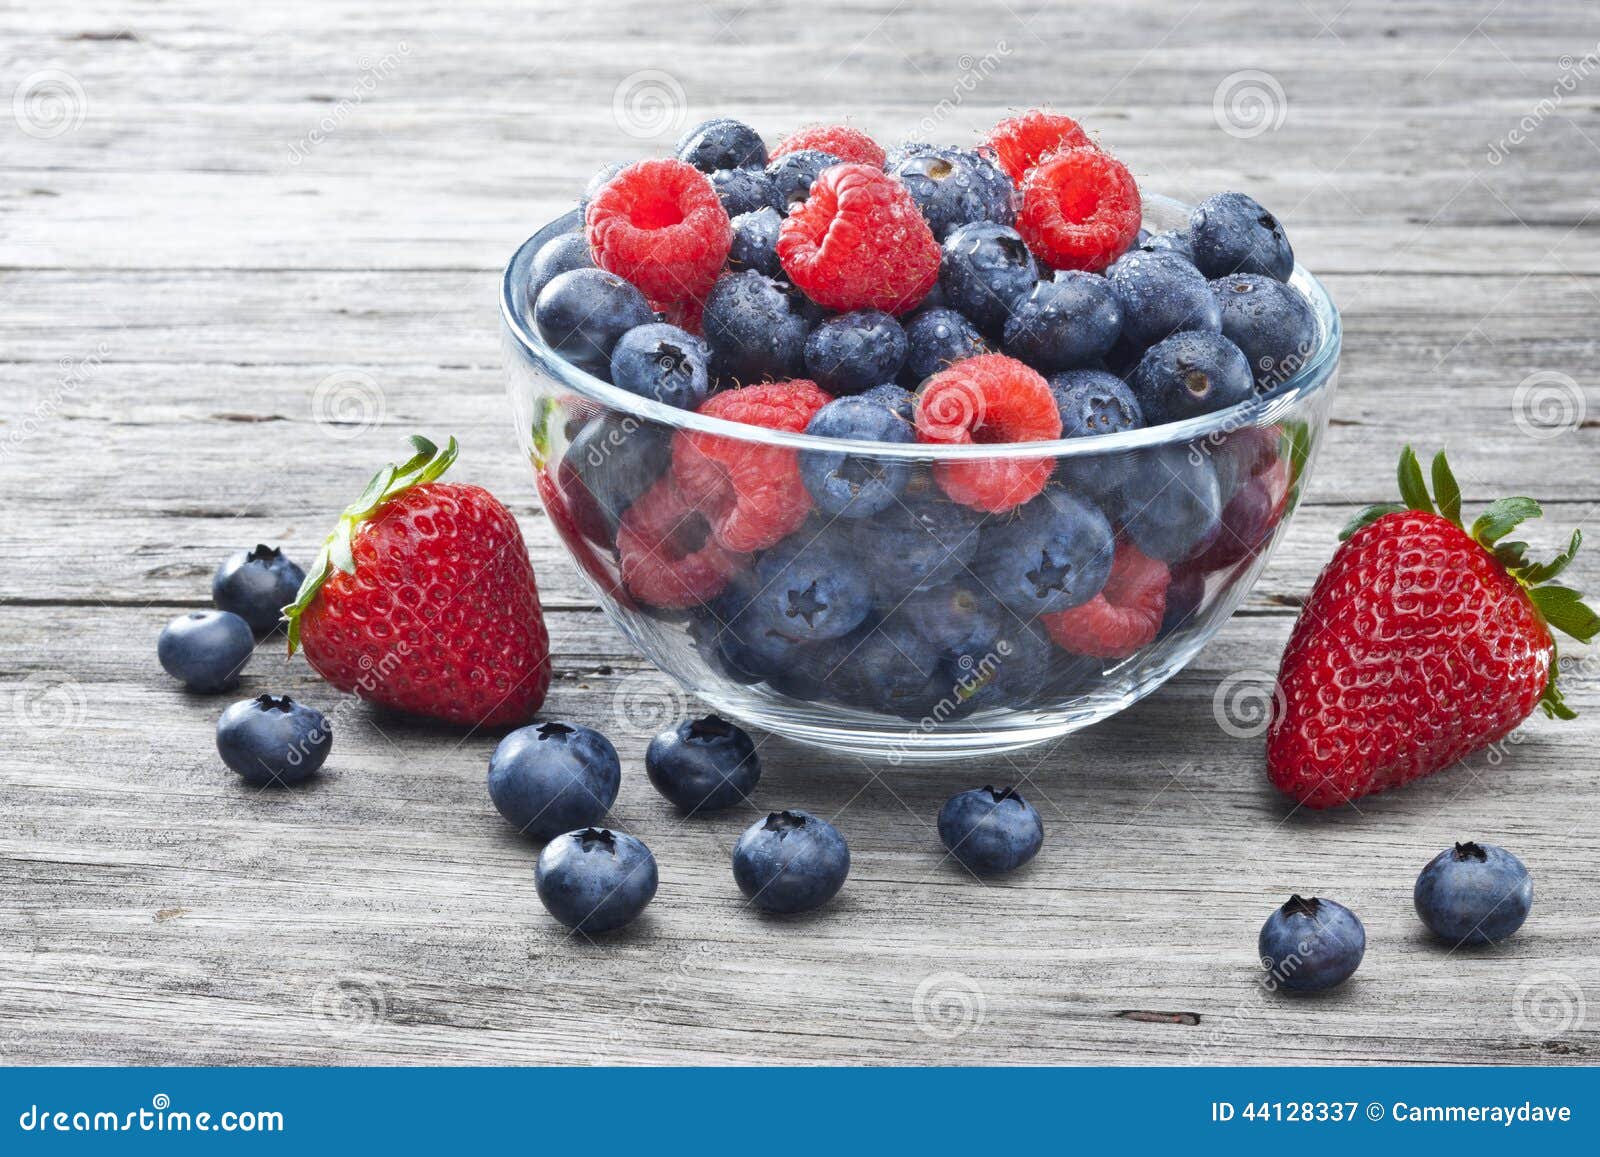 bowl berries fruit food